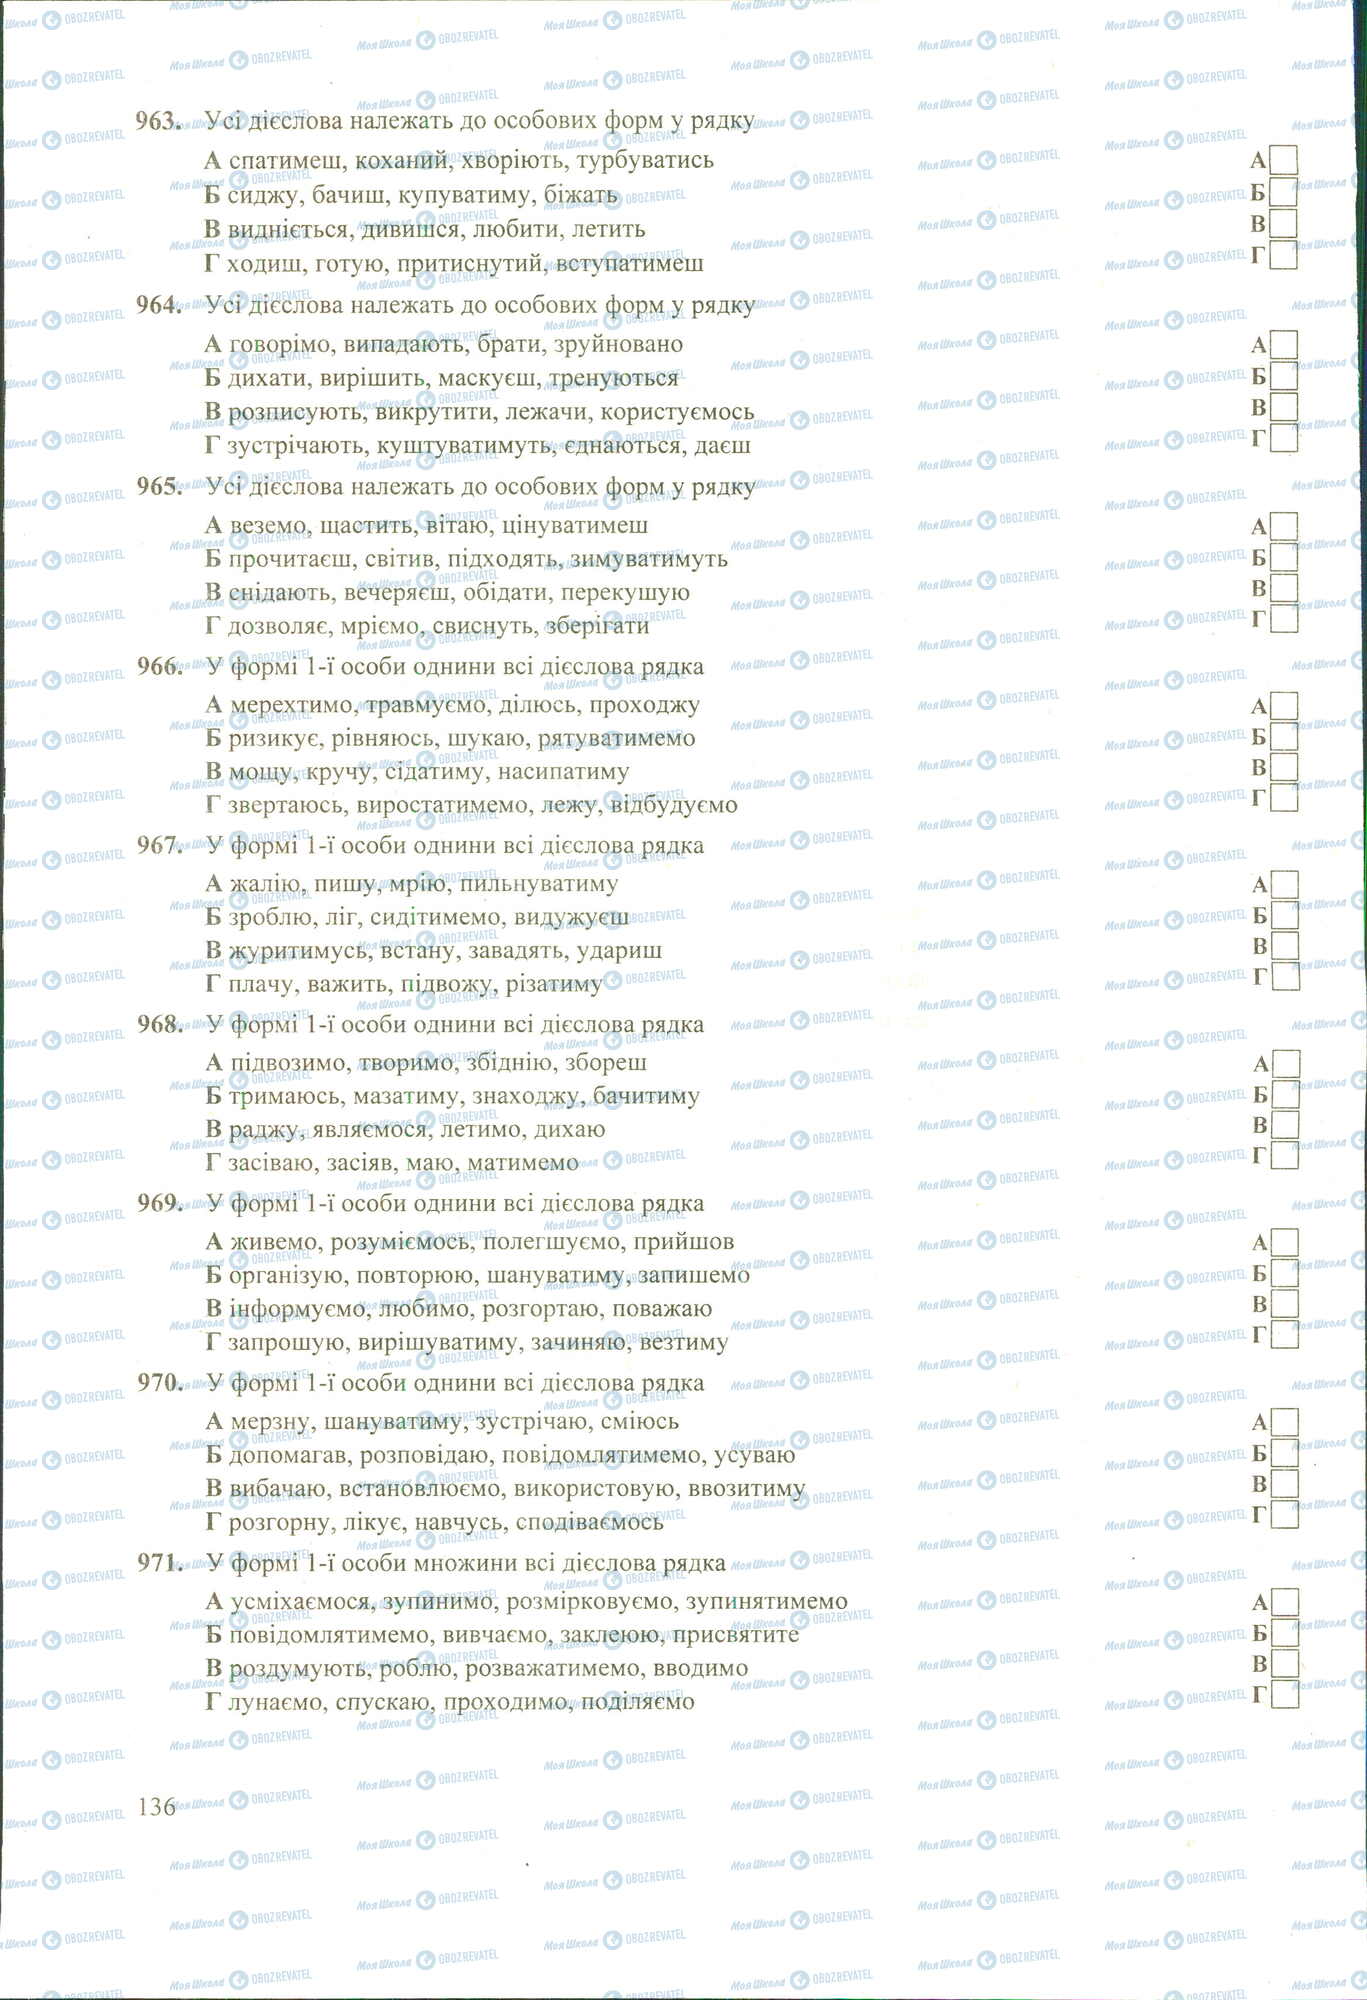 ЗНО Укр мова 11 класс страница 963-971